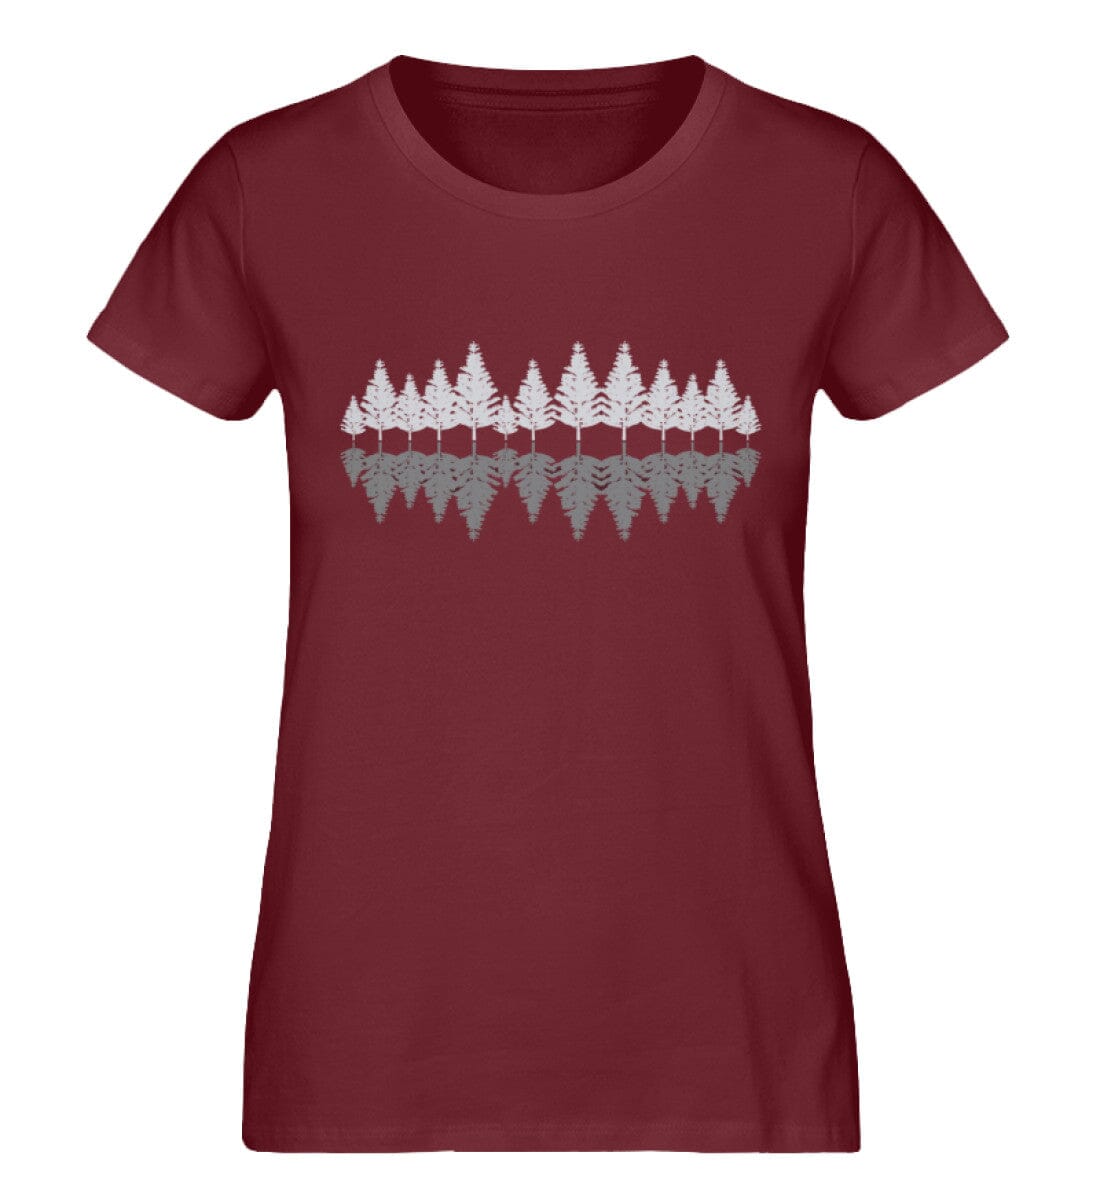 Der Wald und die Bäume - Damen Premium Bio Shirt Burgundy S 